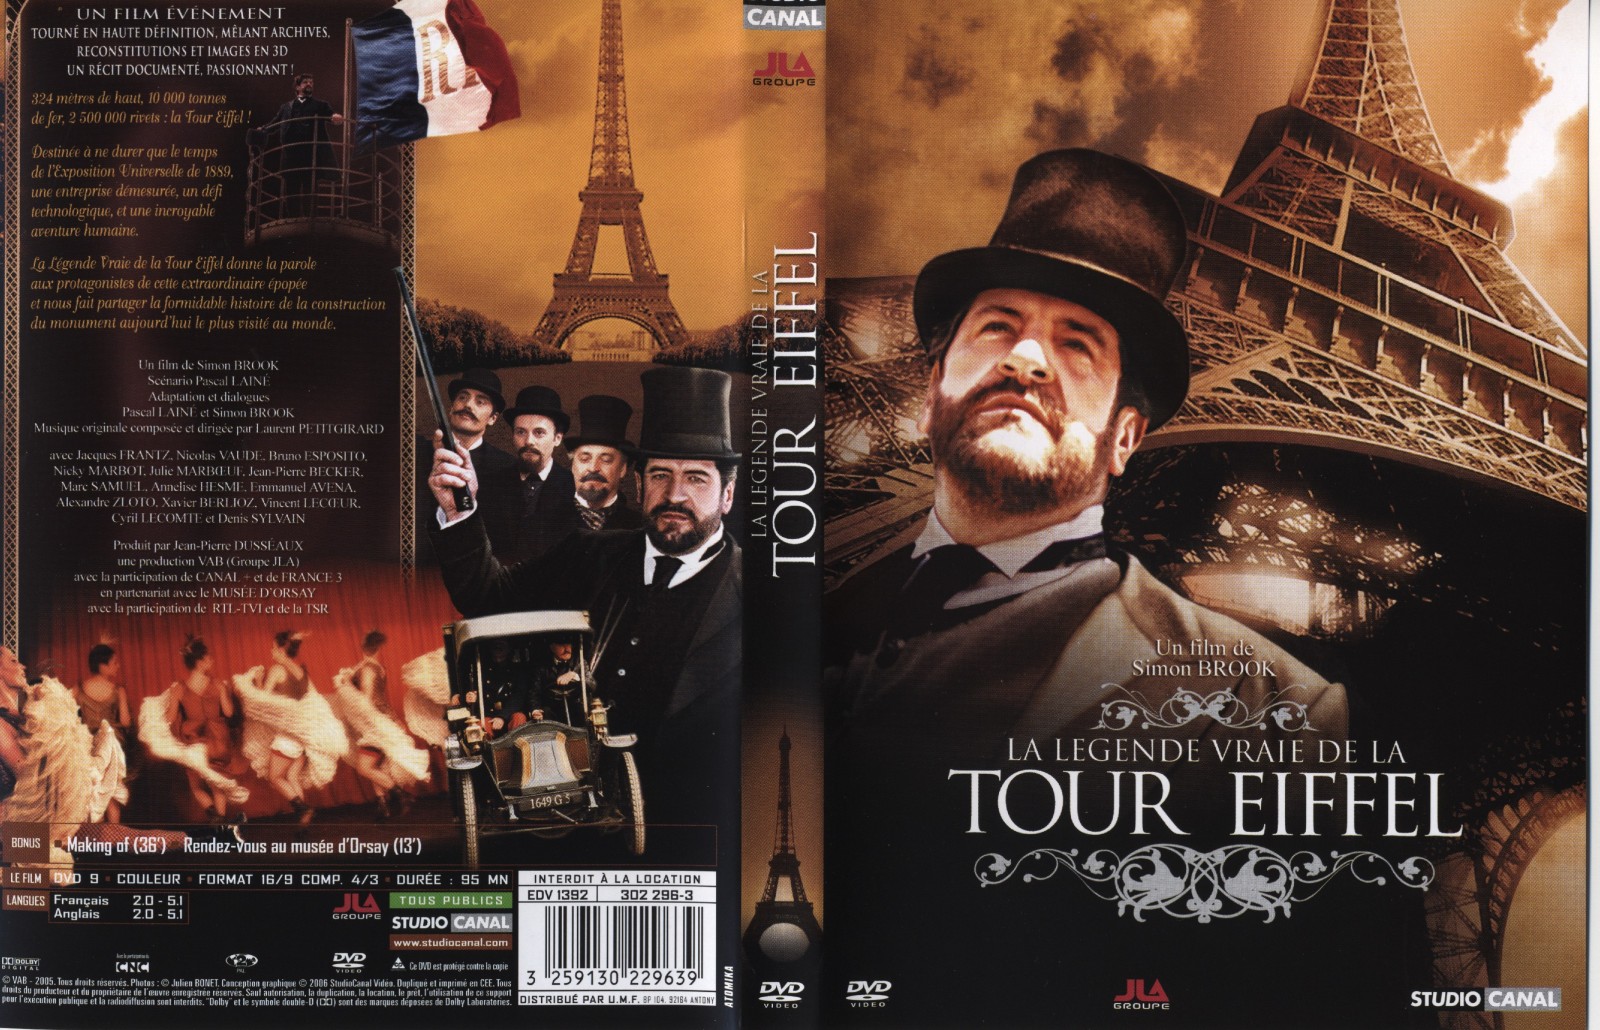 Jaquette DVD La lgende de la vrai tour Eiffel